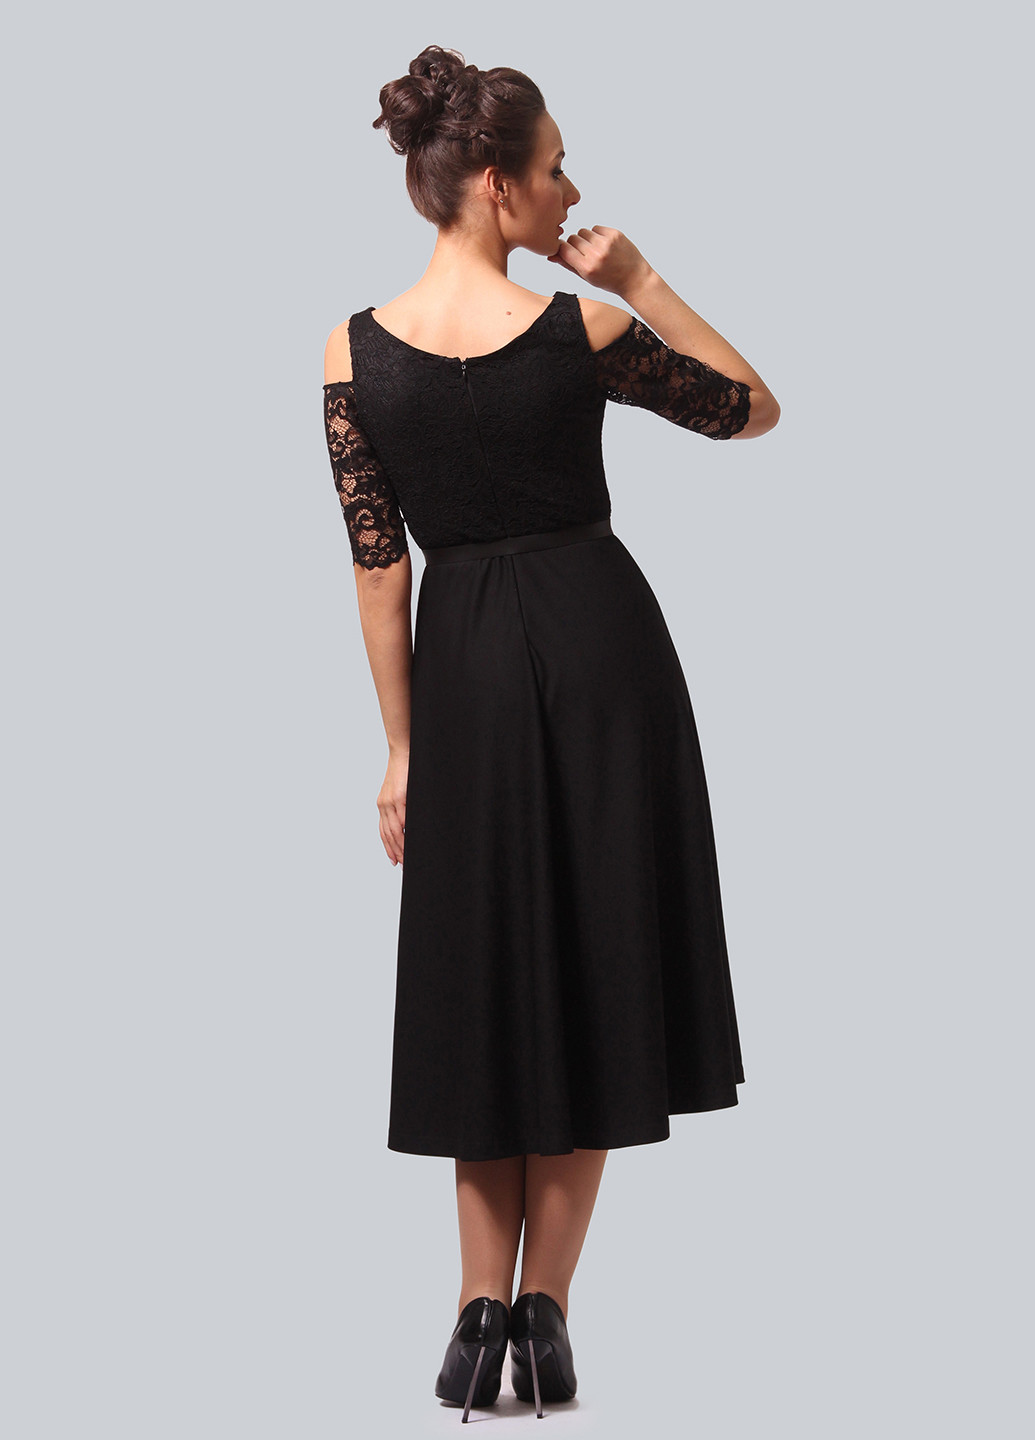 Черное коктейльное платье клеш Alika Kruss однотонное